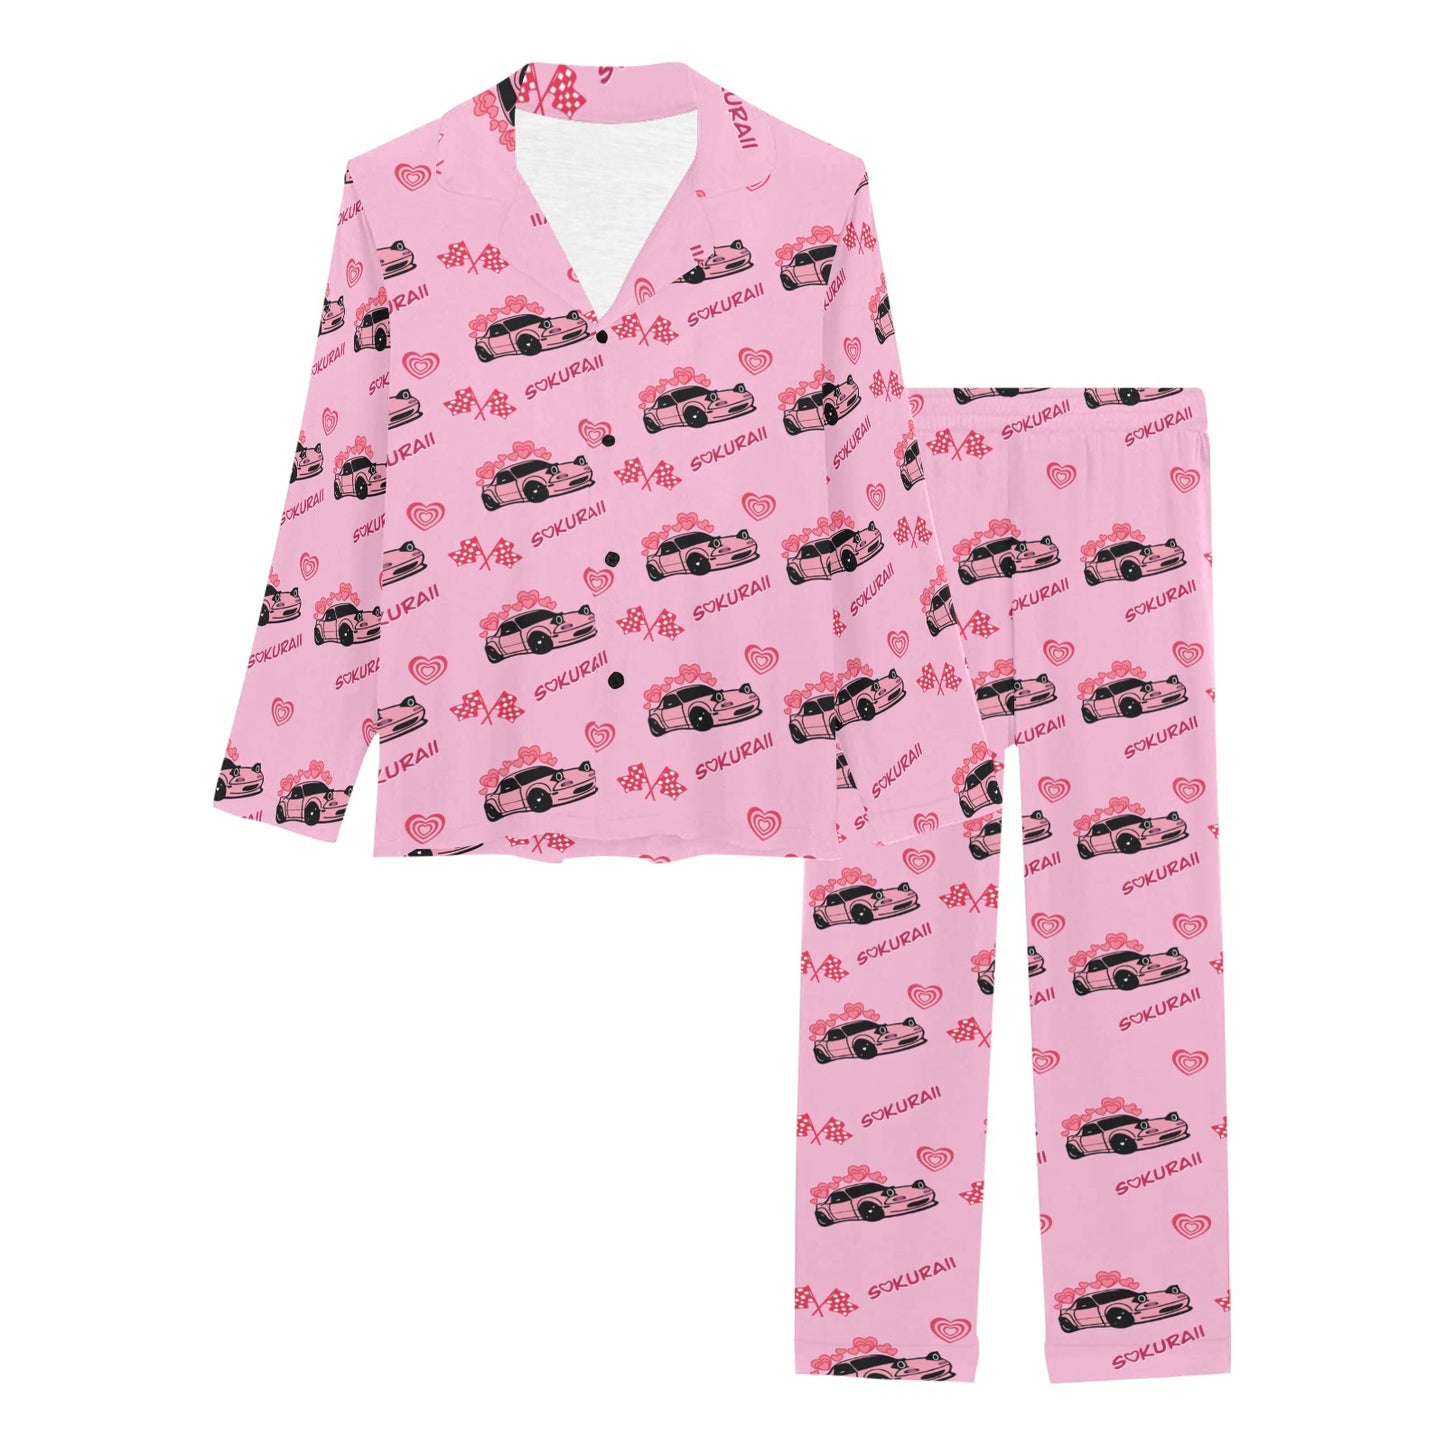 Miata Race Pajama Set